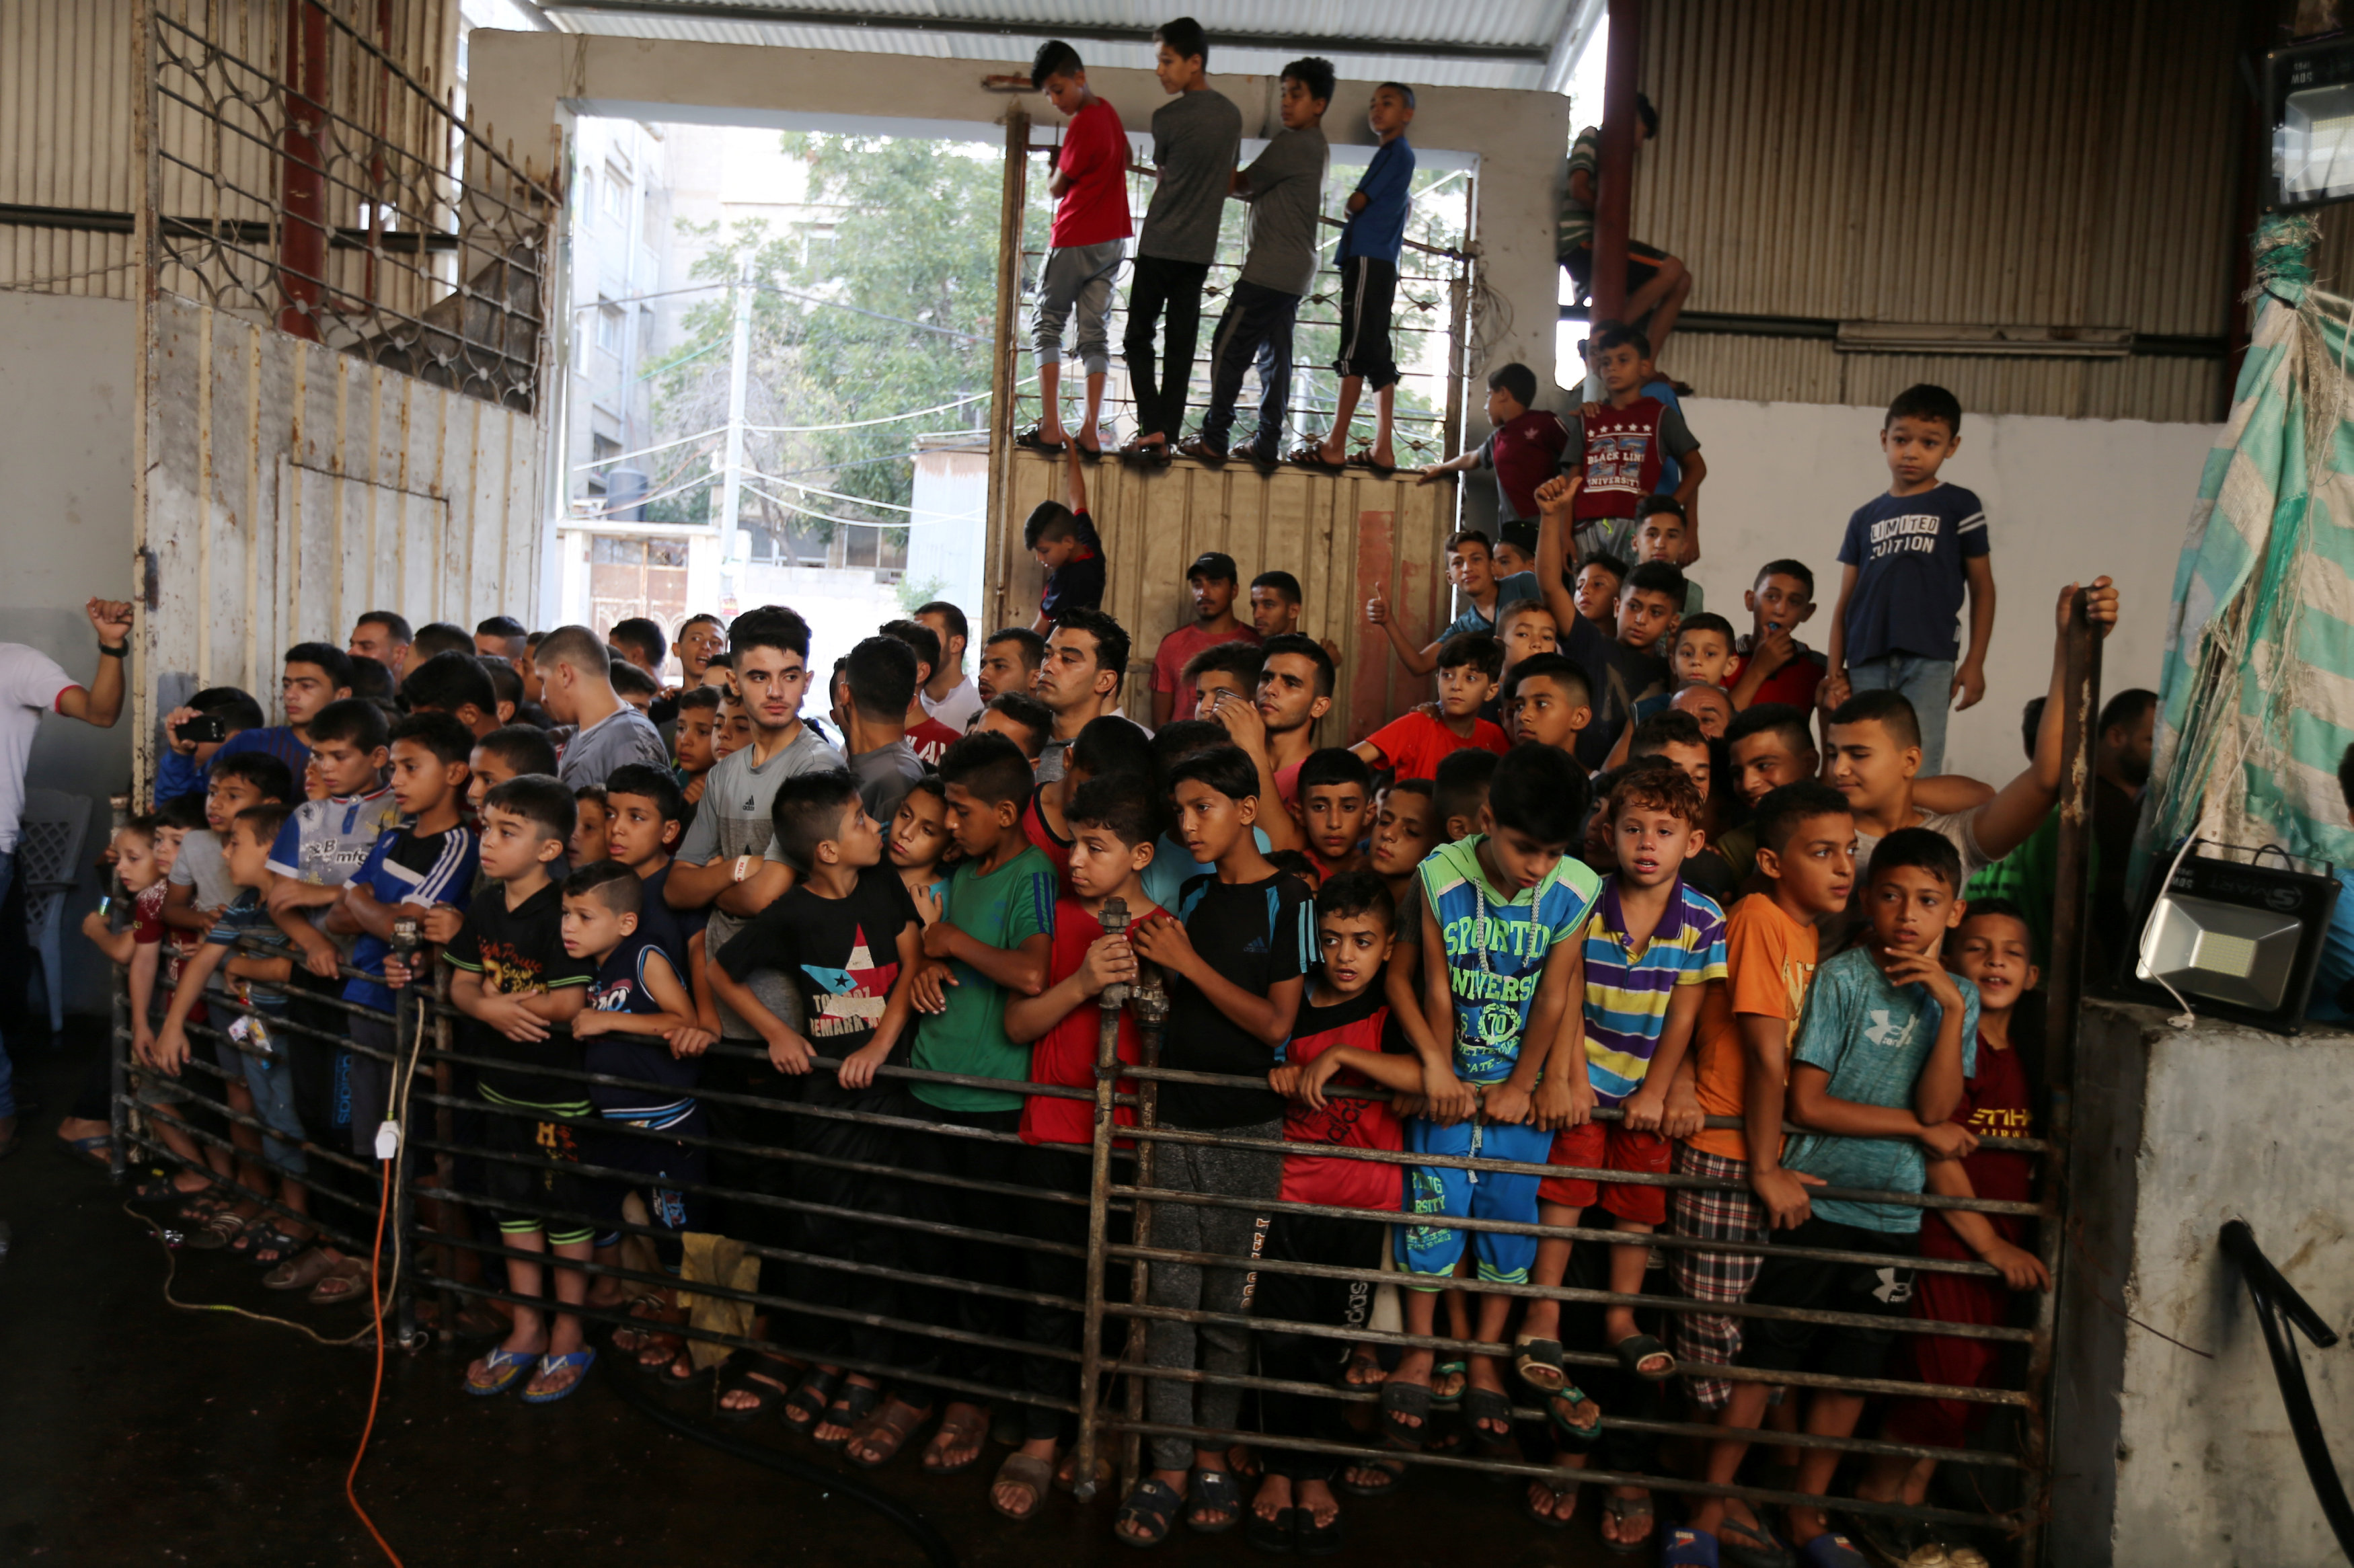 1301334-الأطفال-يجتمعون-لمشاهدة-ذبح-الأضاحى-فى-العيد-فى-فلسطين